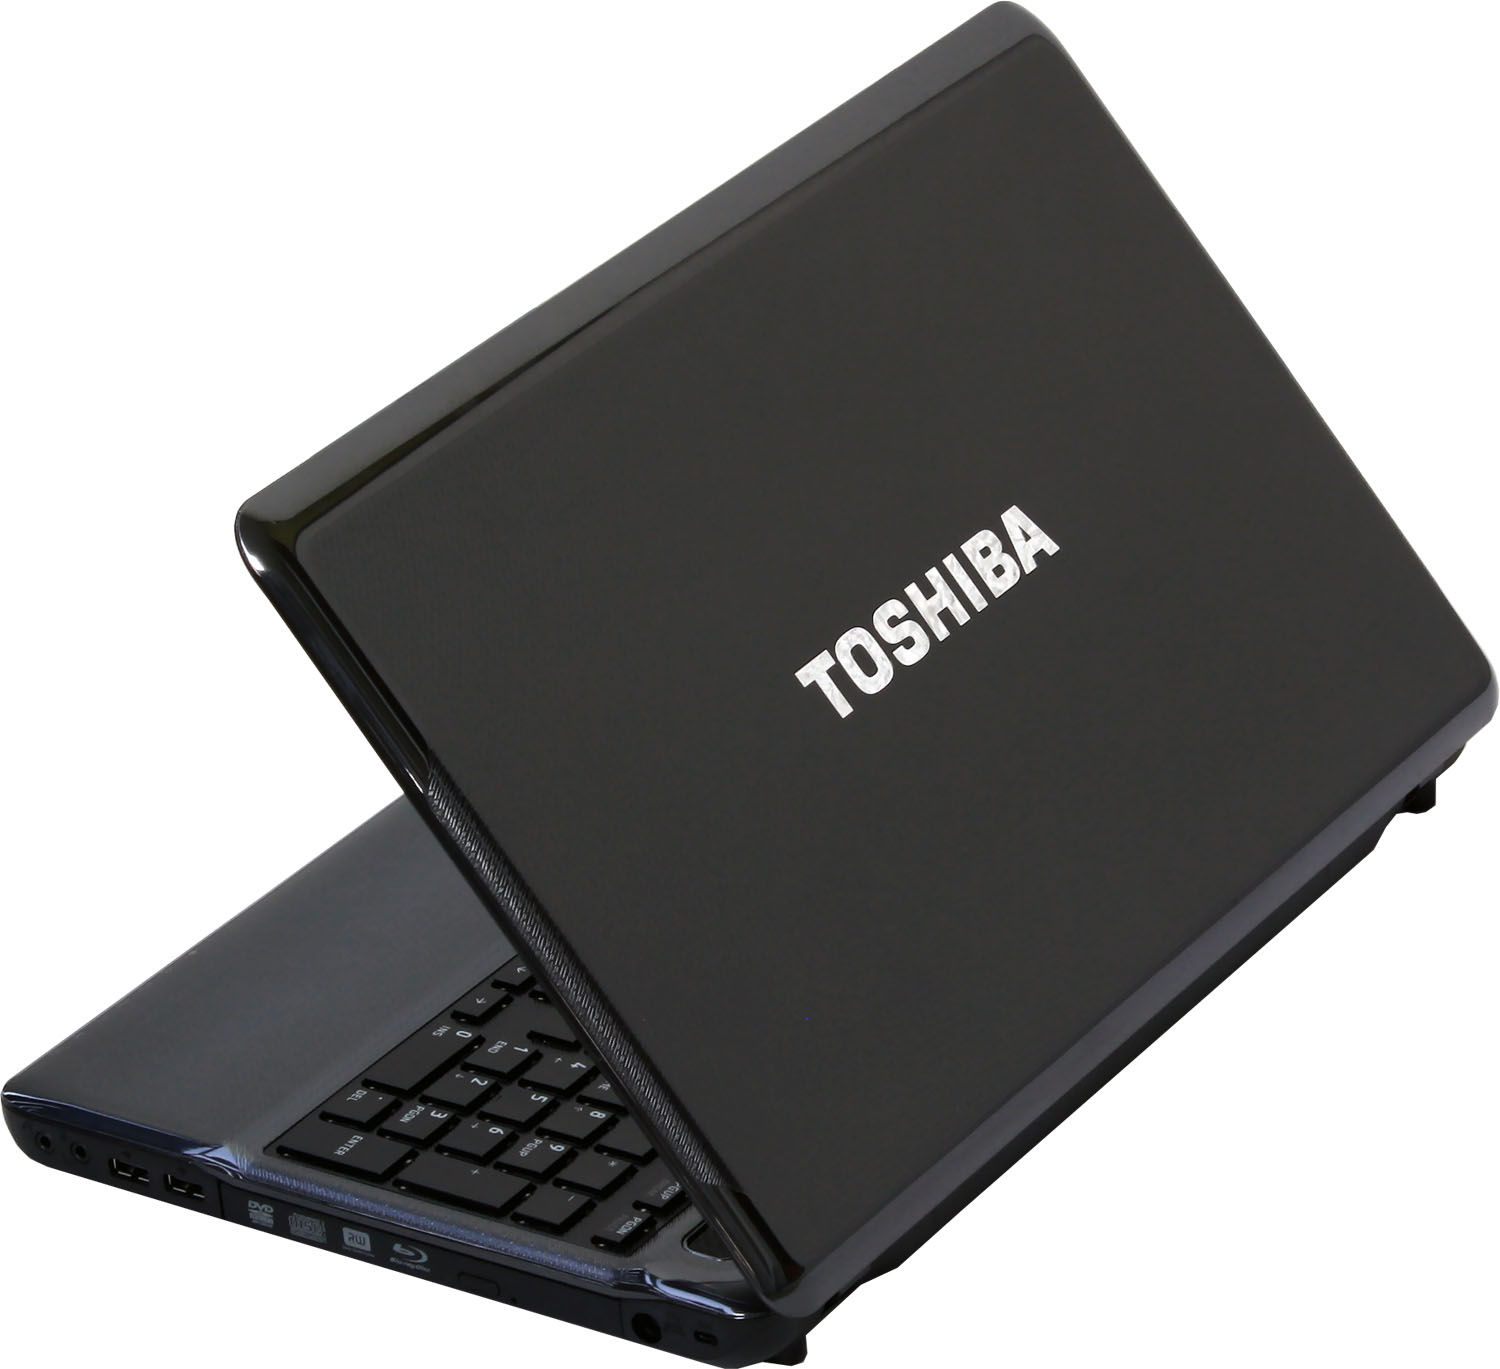 Toshiba Satellite A665 —  dostupný 3D notebook